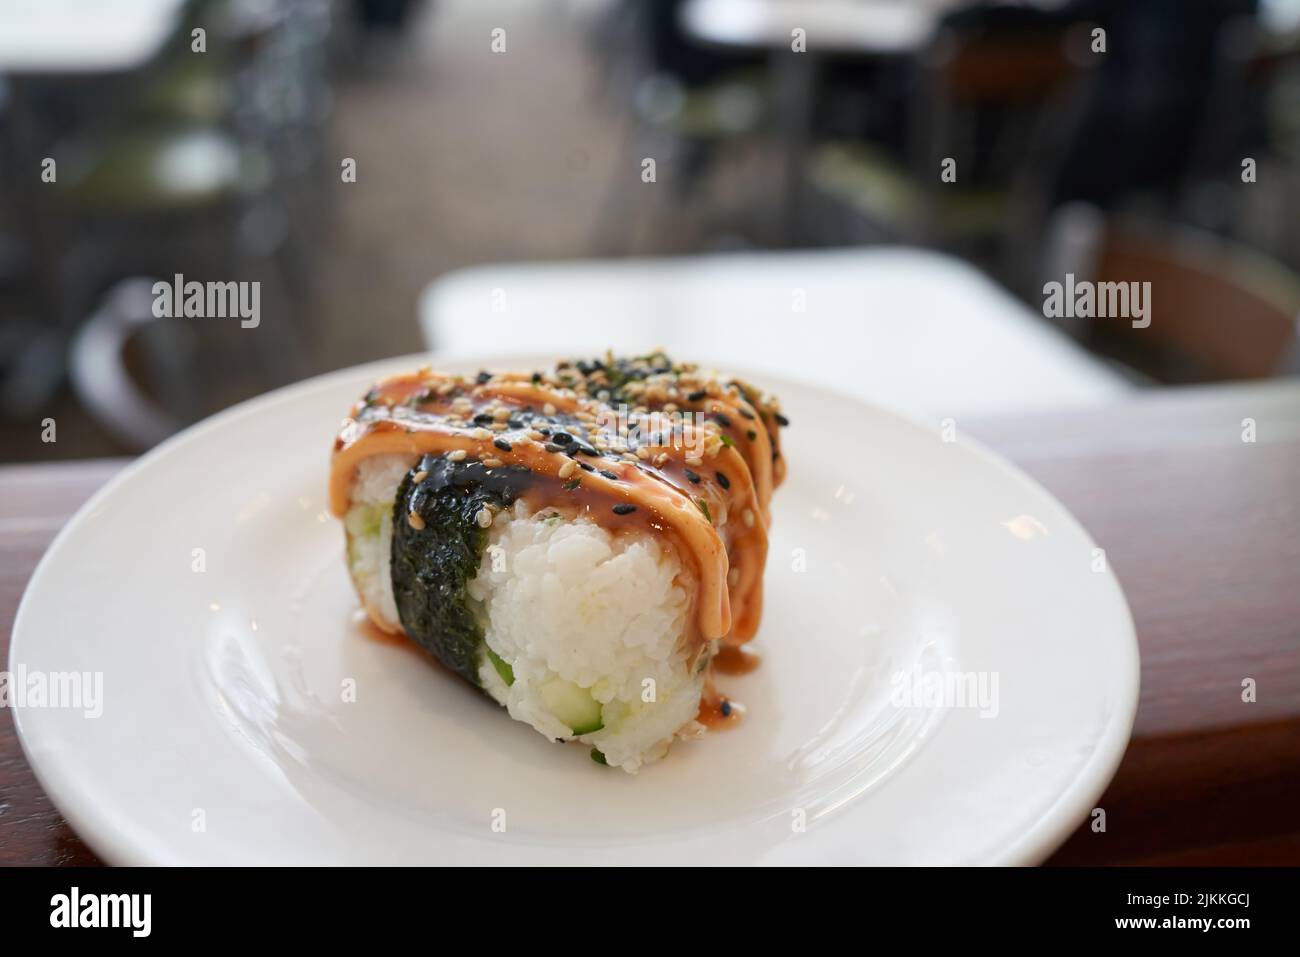 Eine Nahaufnahme eines Onigiri-Reisballs mit würzigem Mayo und Furikake, die lecker aussehen Stockfoto